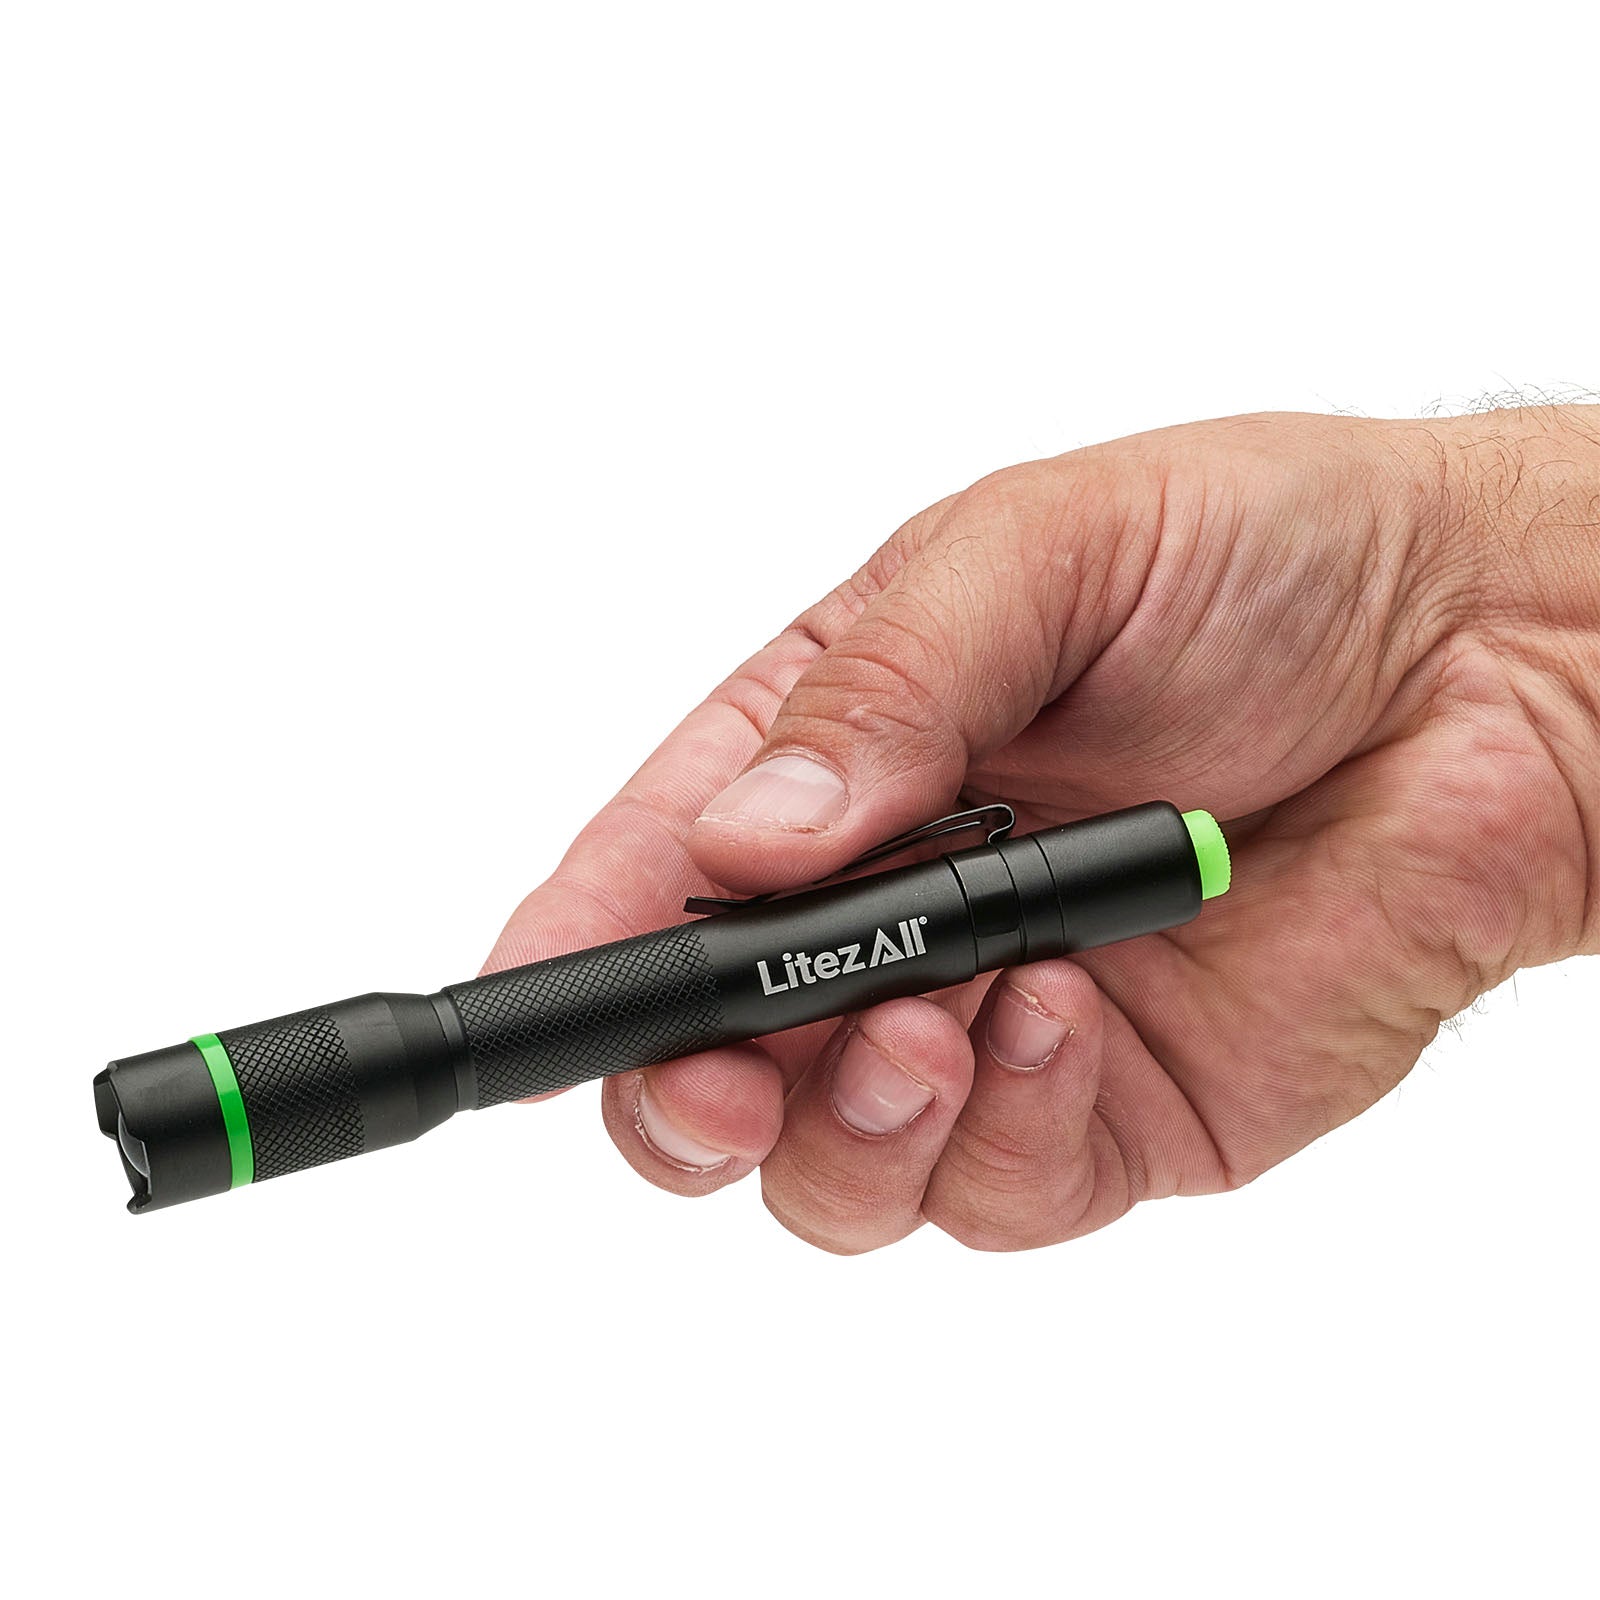 LitezAll 250 Lumen Pen Light - LitezAll - Pen Light - 4